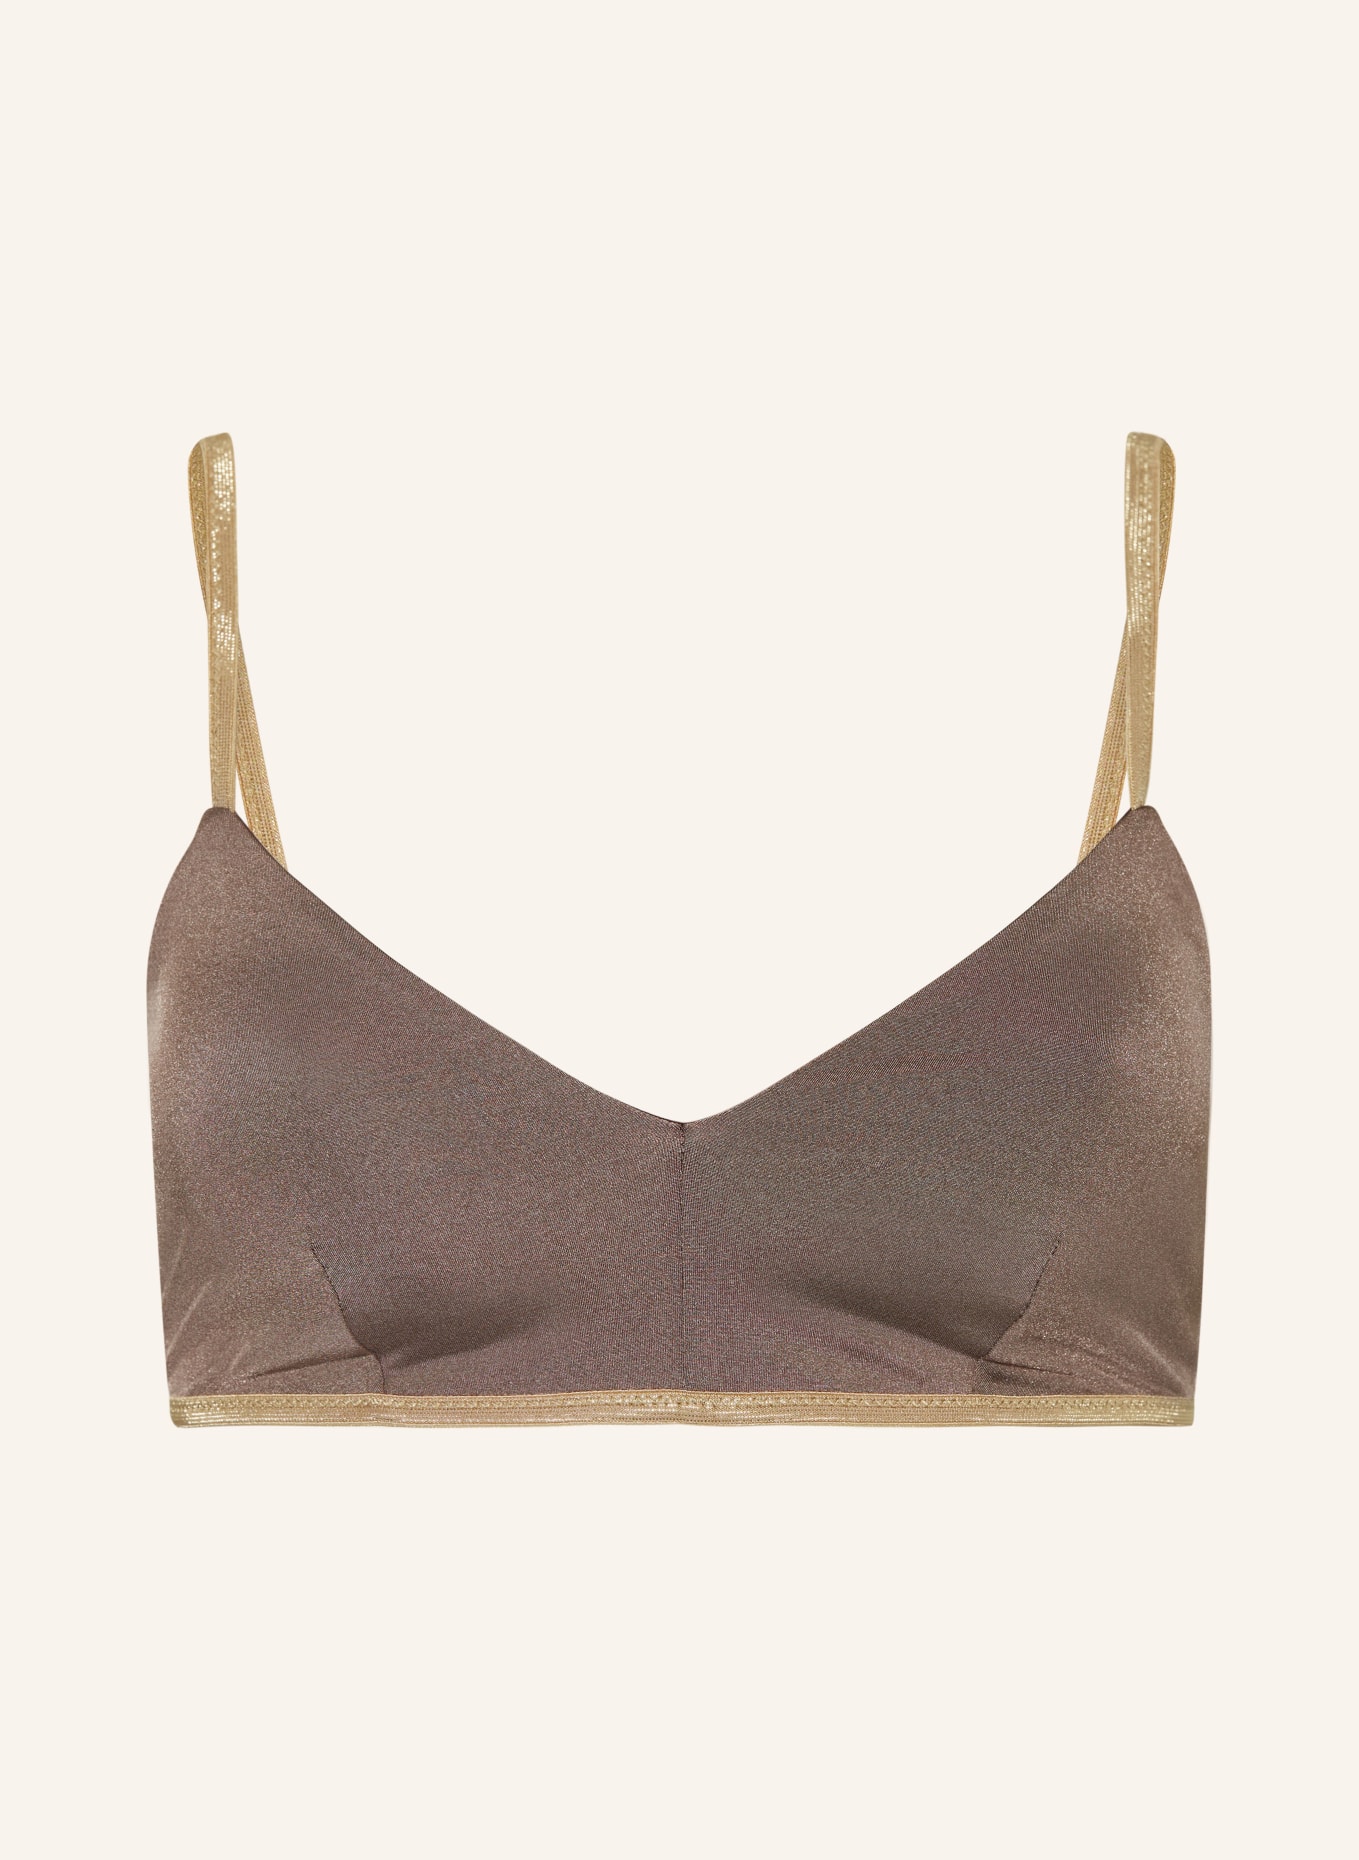 MYMARINI Bralette-Bikini-Top CLASSIC SHINE zum Wenden mit UV-Schutz 50+, Farbe: HELLBRAUN (Bild 1)